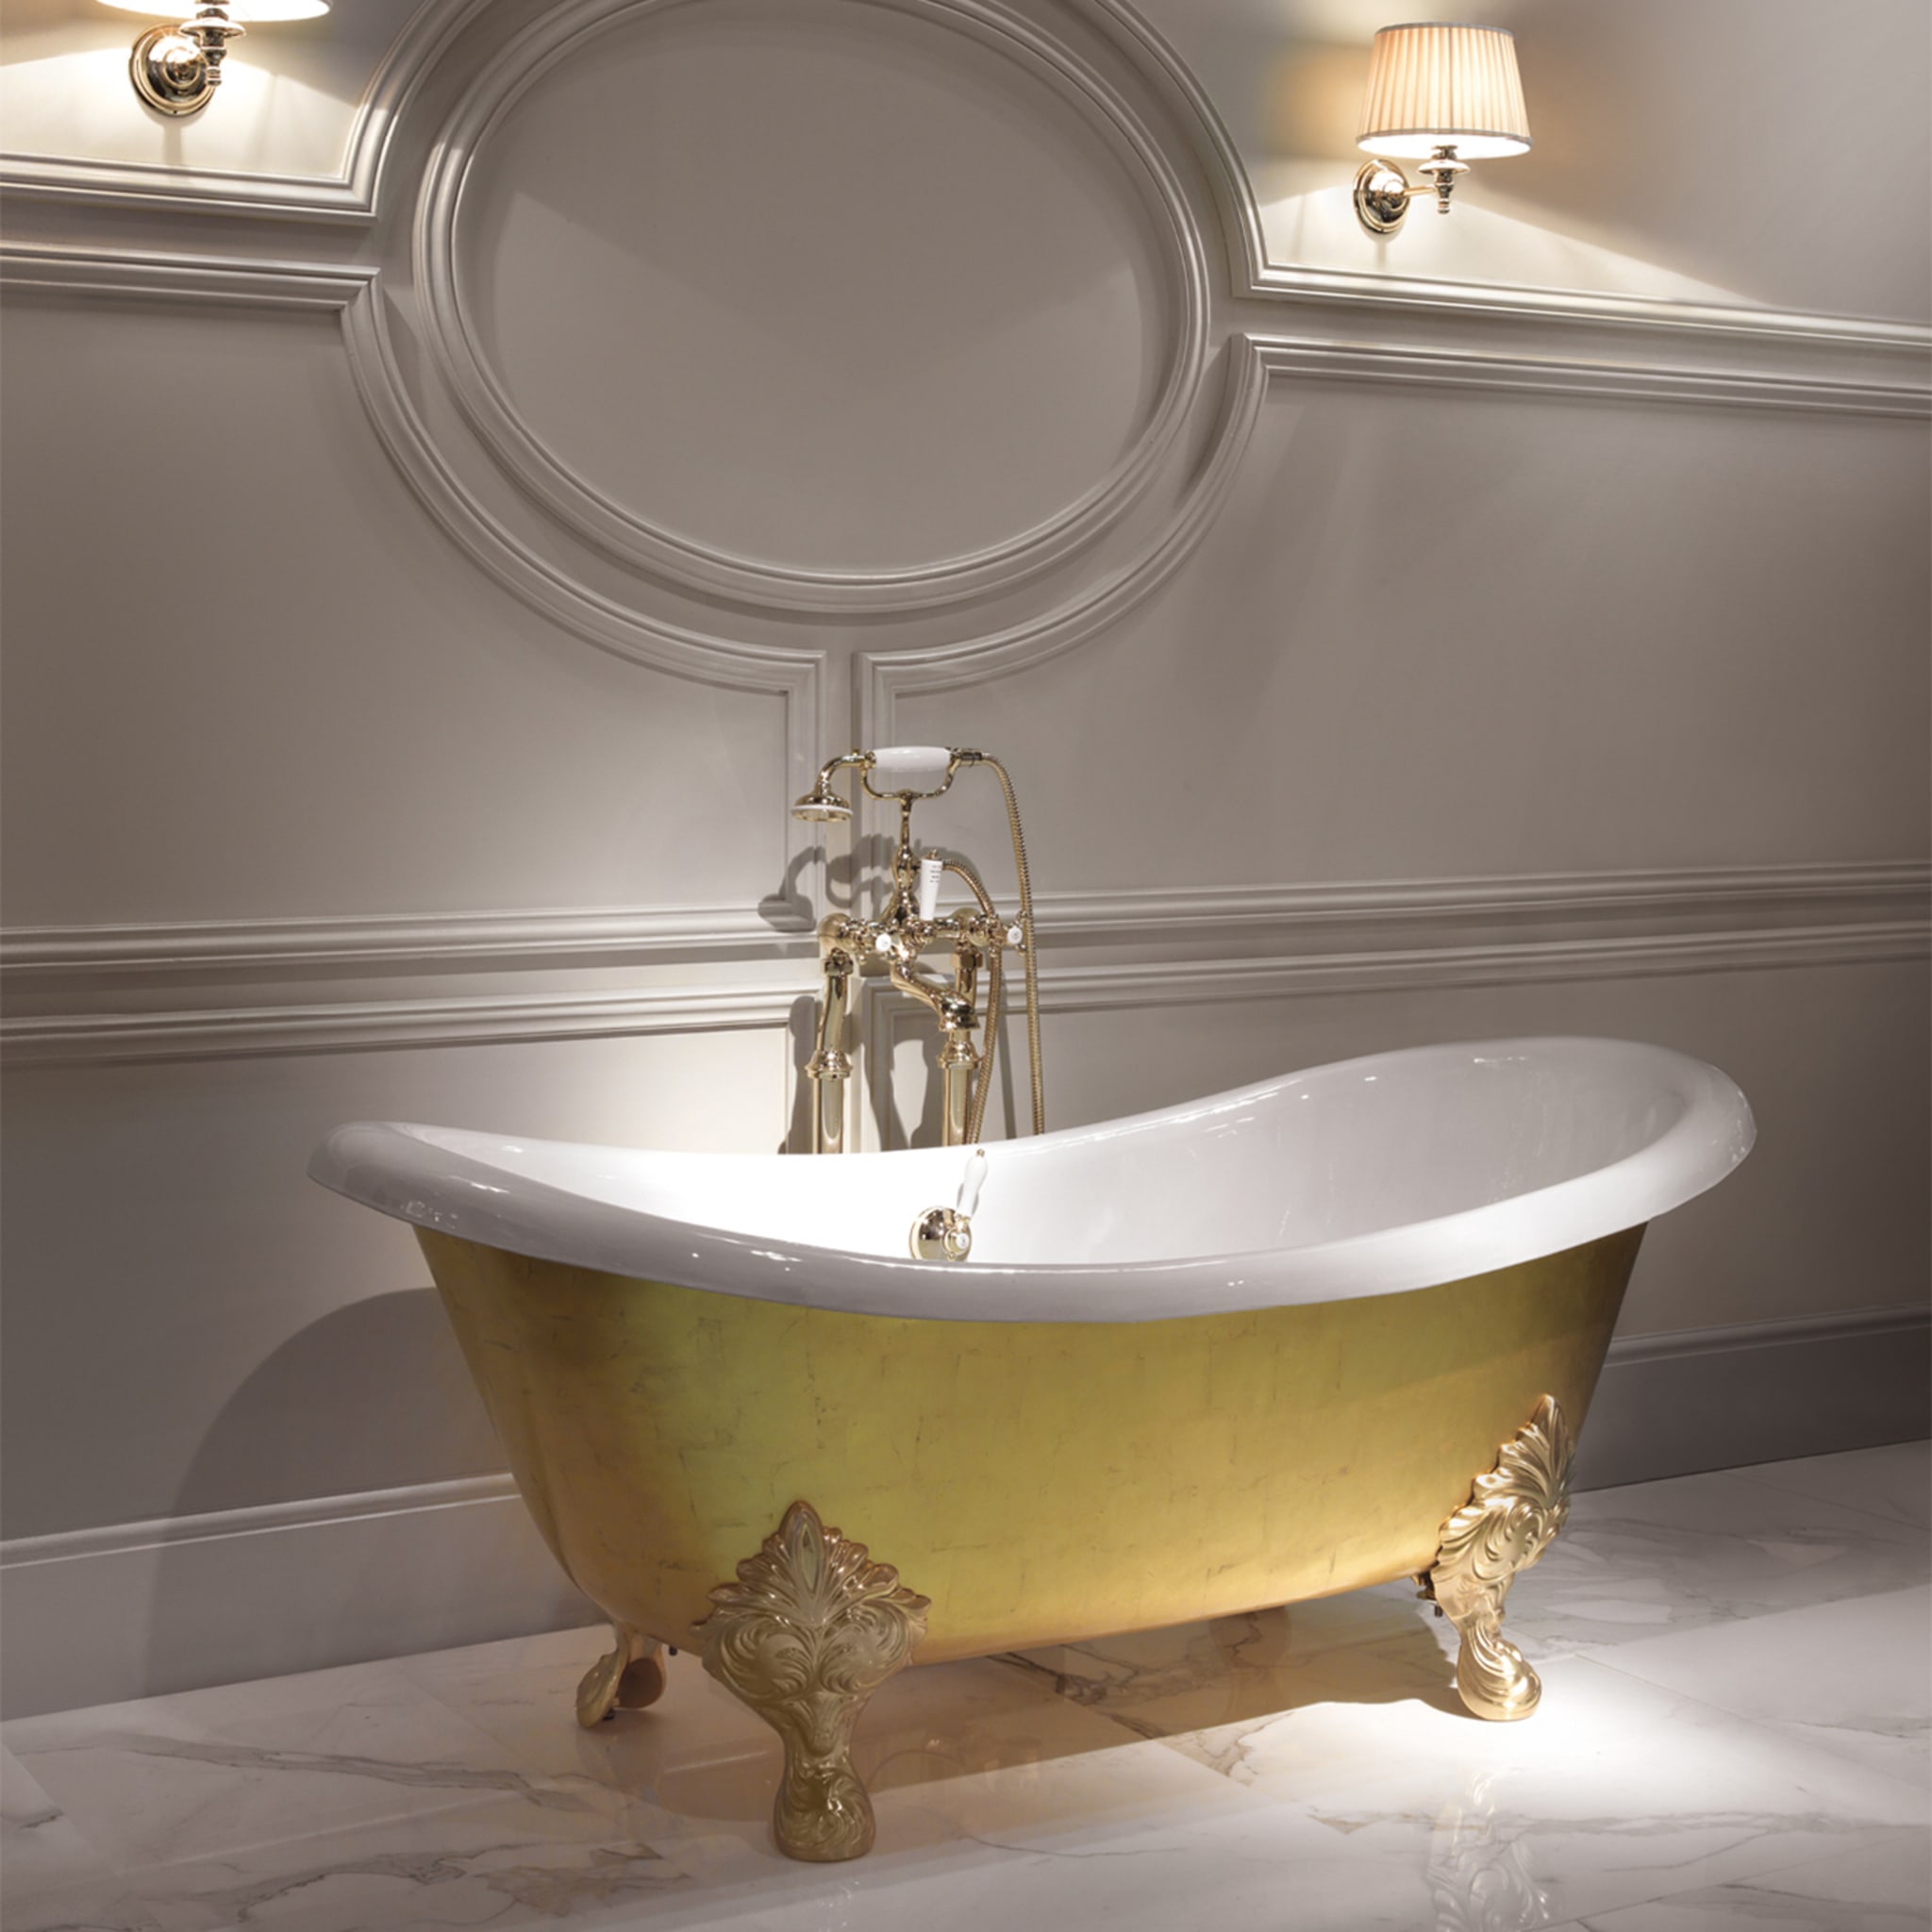 Mida Bathtub with Gold Leaf Applied by Hand - Alternative view 1